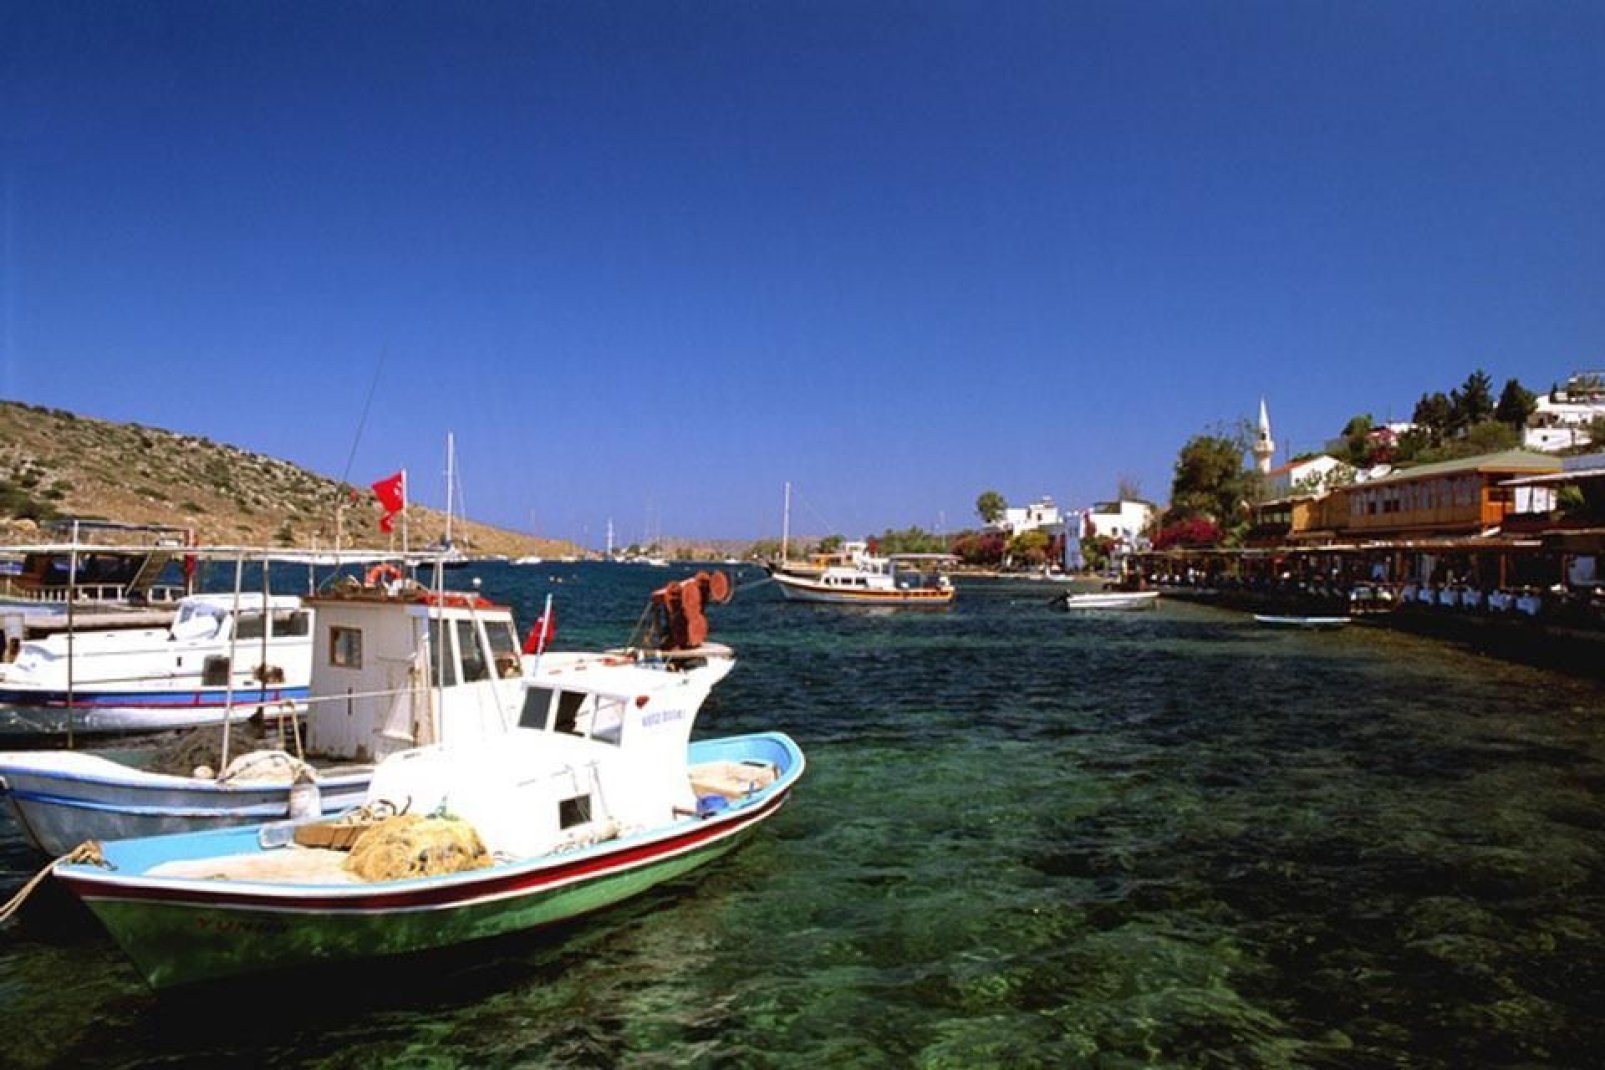 Le coste turche offrono dei bellissimi paesaggi da scoprire sulla terraferma... Ma anche dal mare, con un giro in barca;